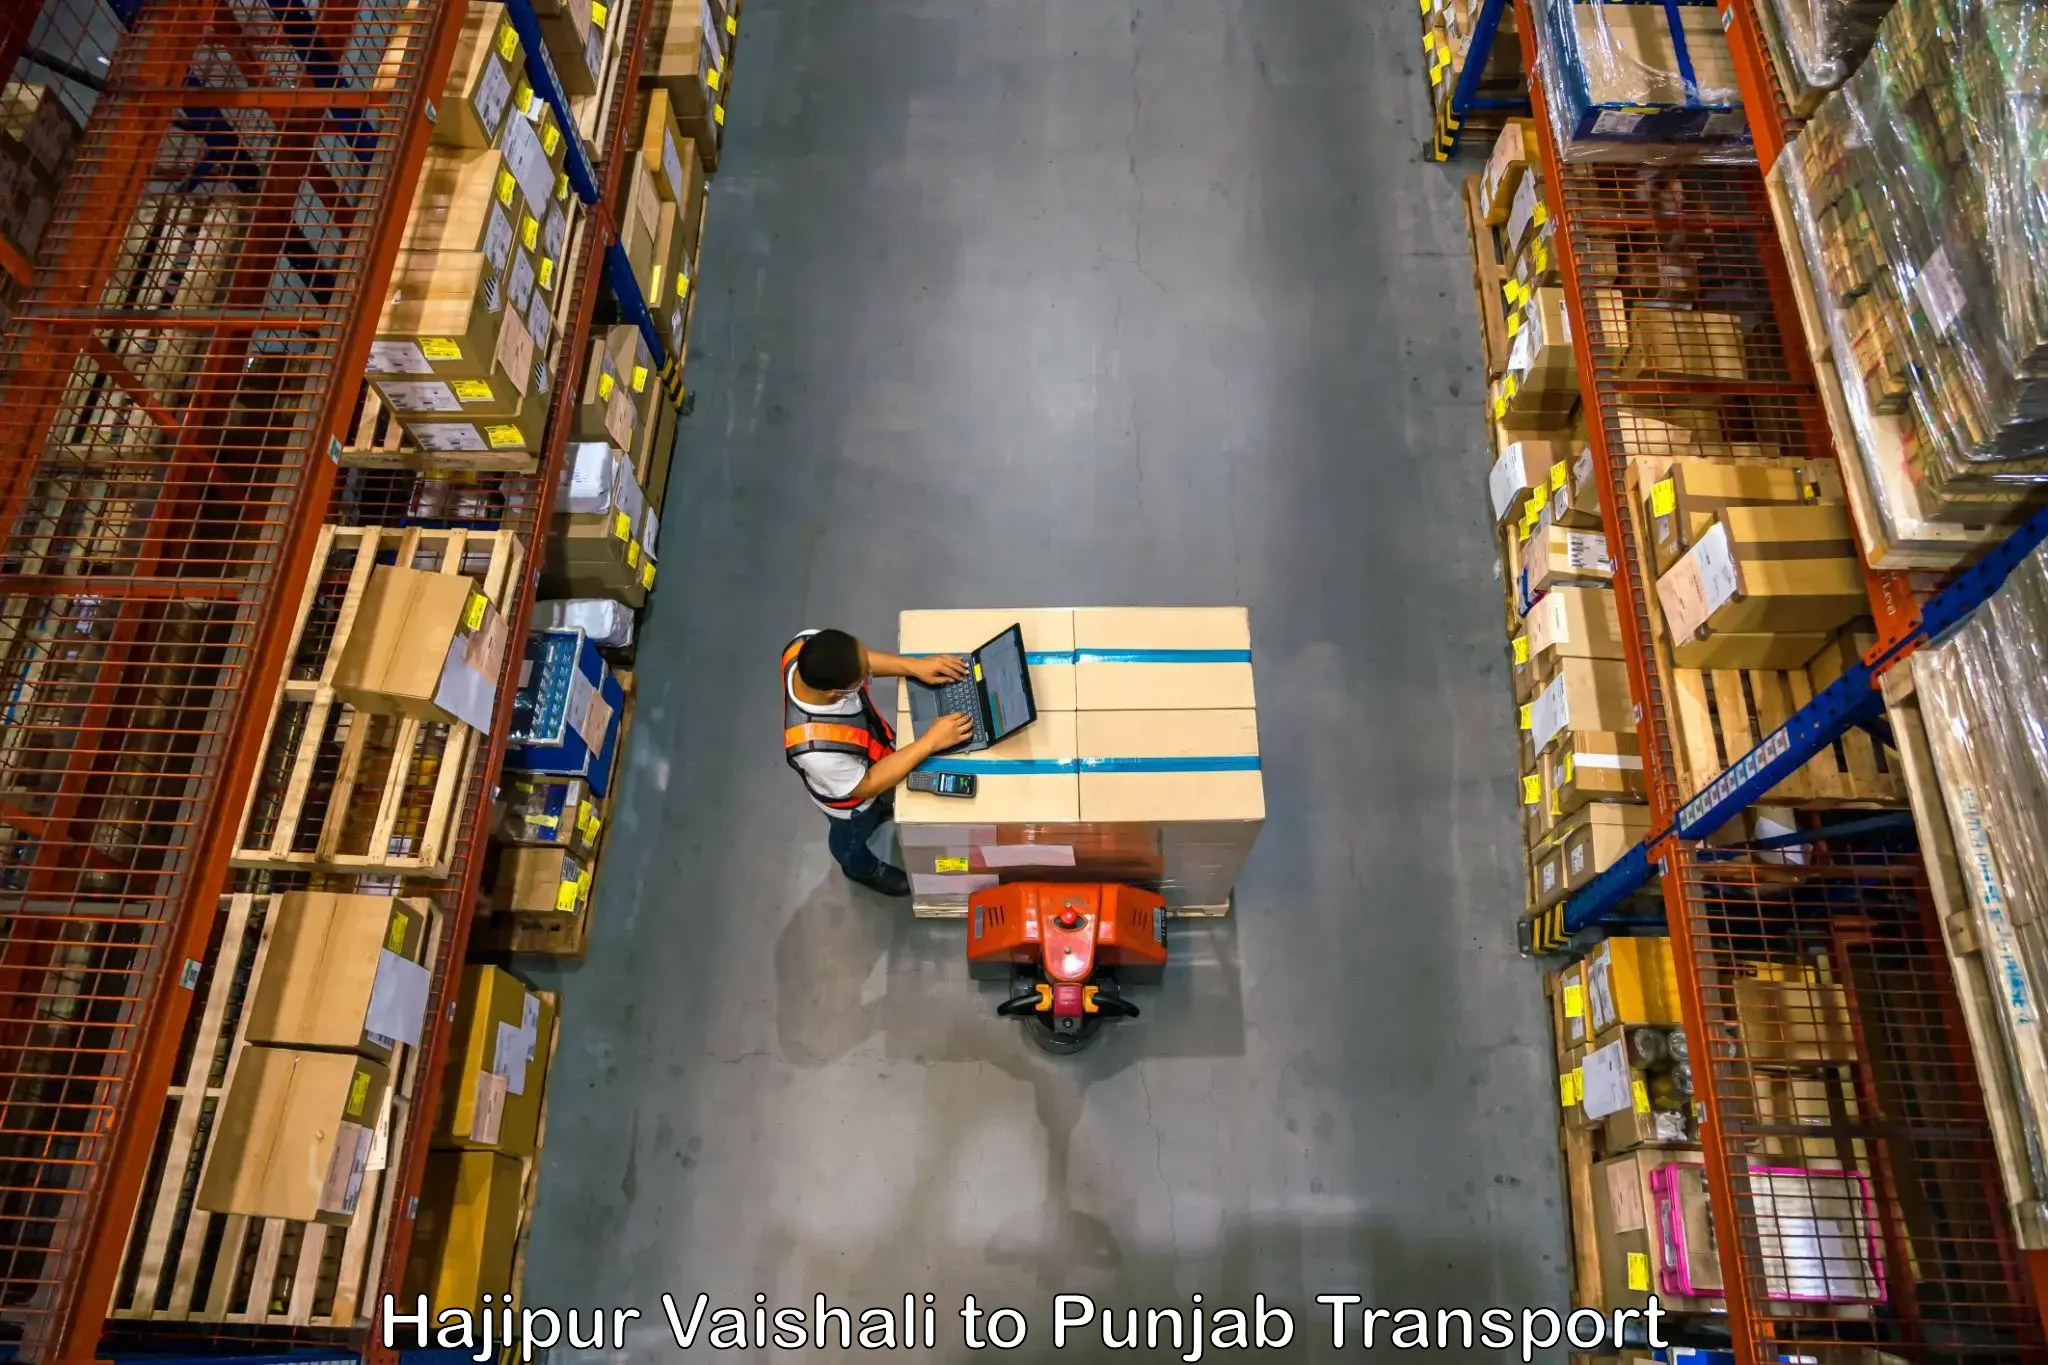 Furniture transport service Hajipur Vaishali to Raikot